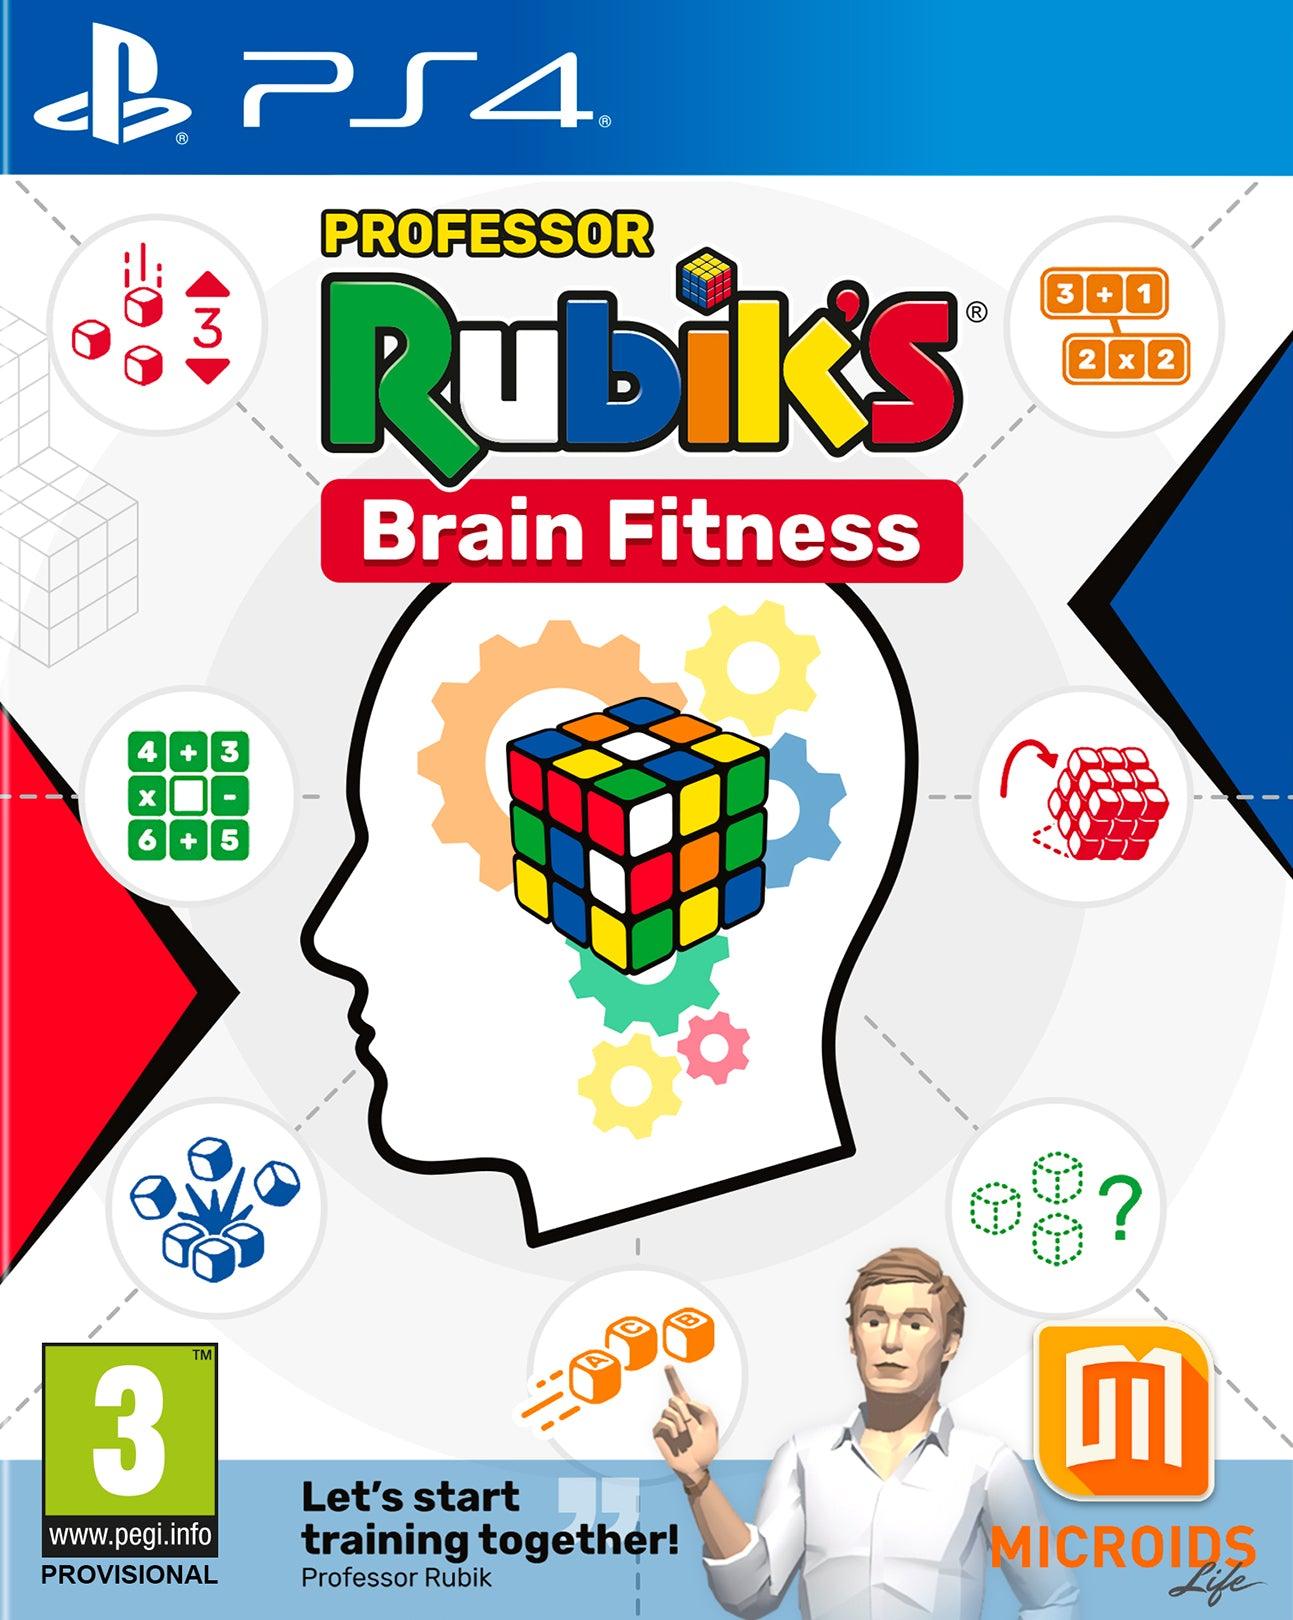 Prof Rubicks Brain Fitness - Want a New Gadget